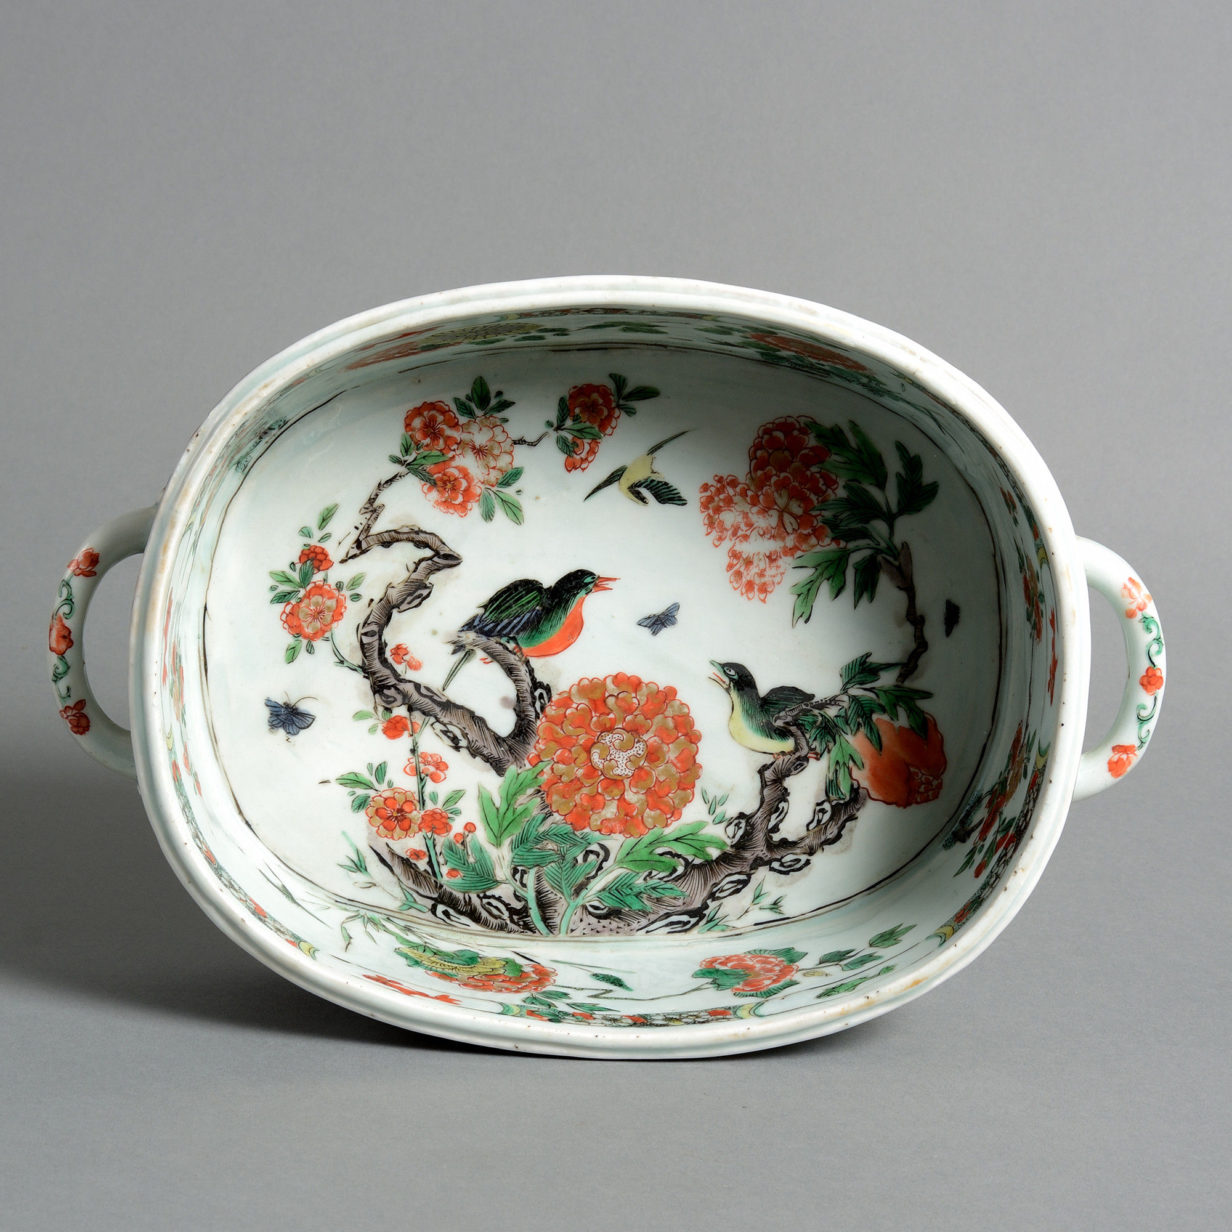 Two 18th century kangxi porcelain jardinieres